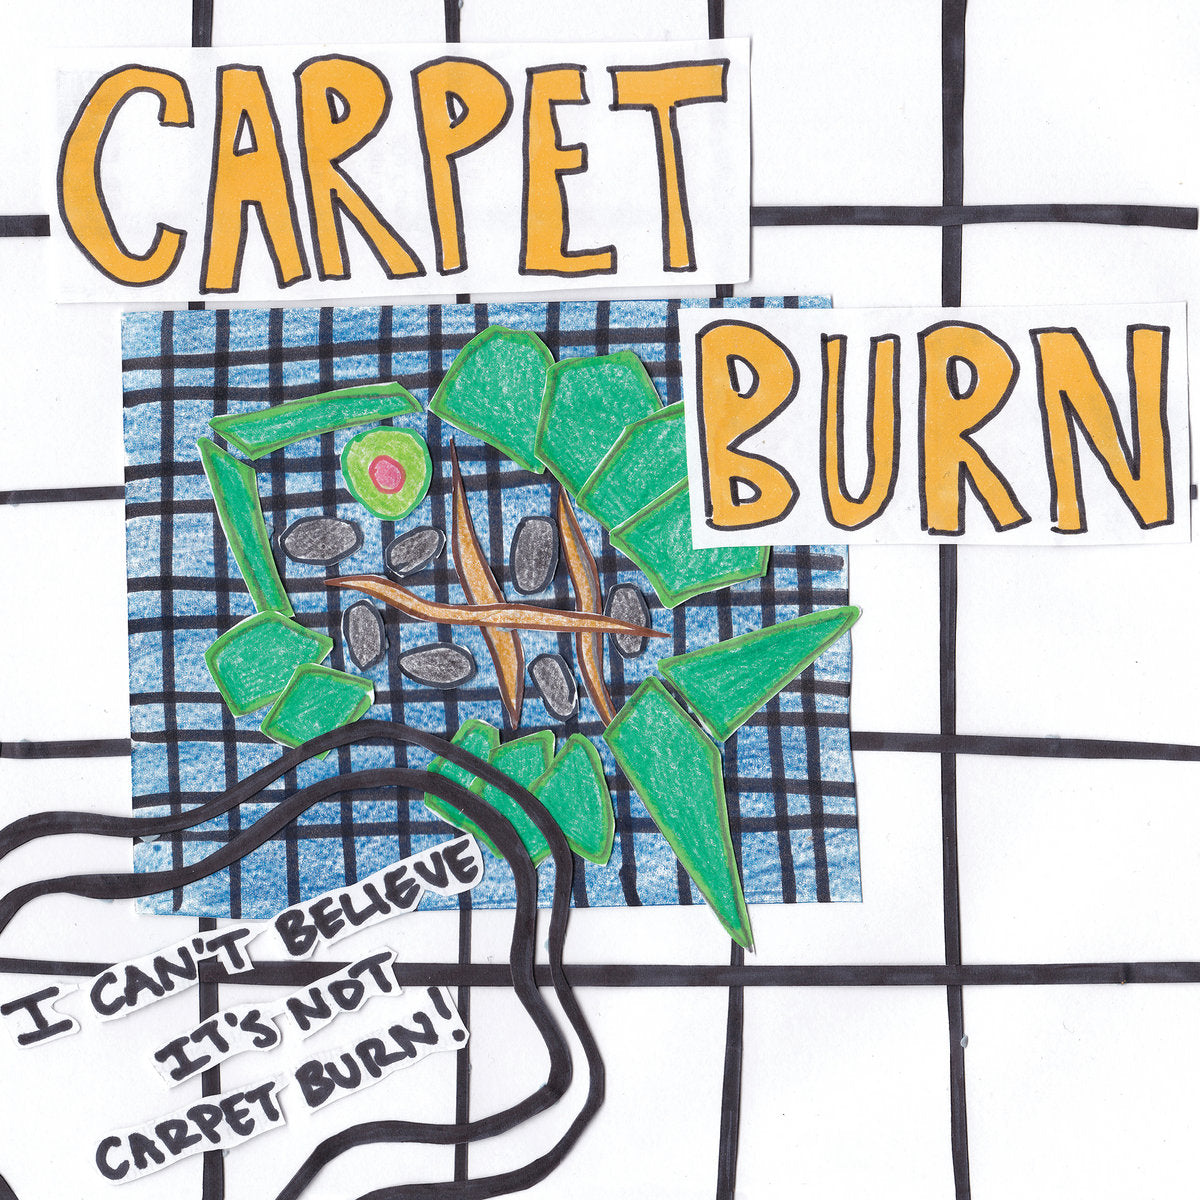 CARPET BURN - "I CAN'T BELIEVE IT'S NOT CARPET BURN" 7"